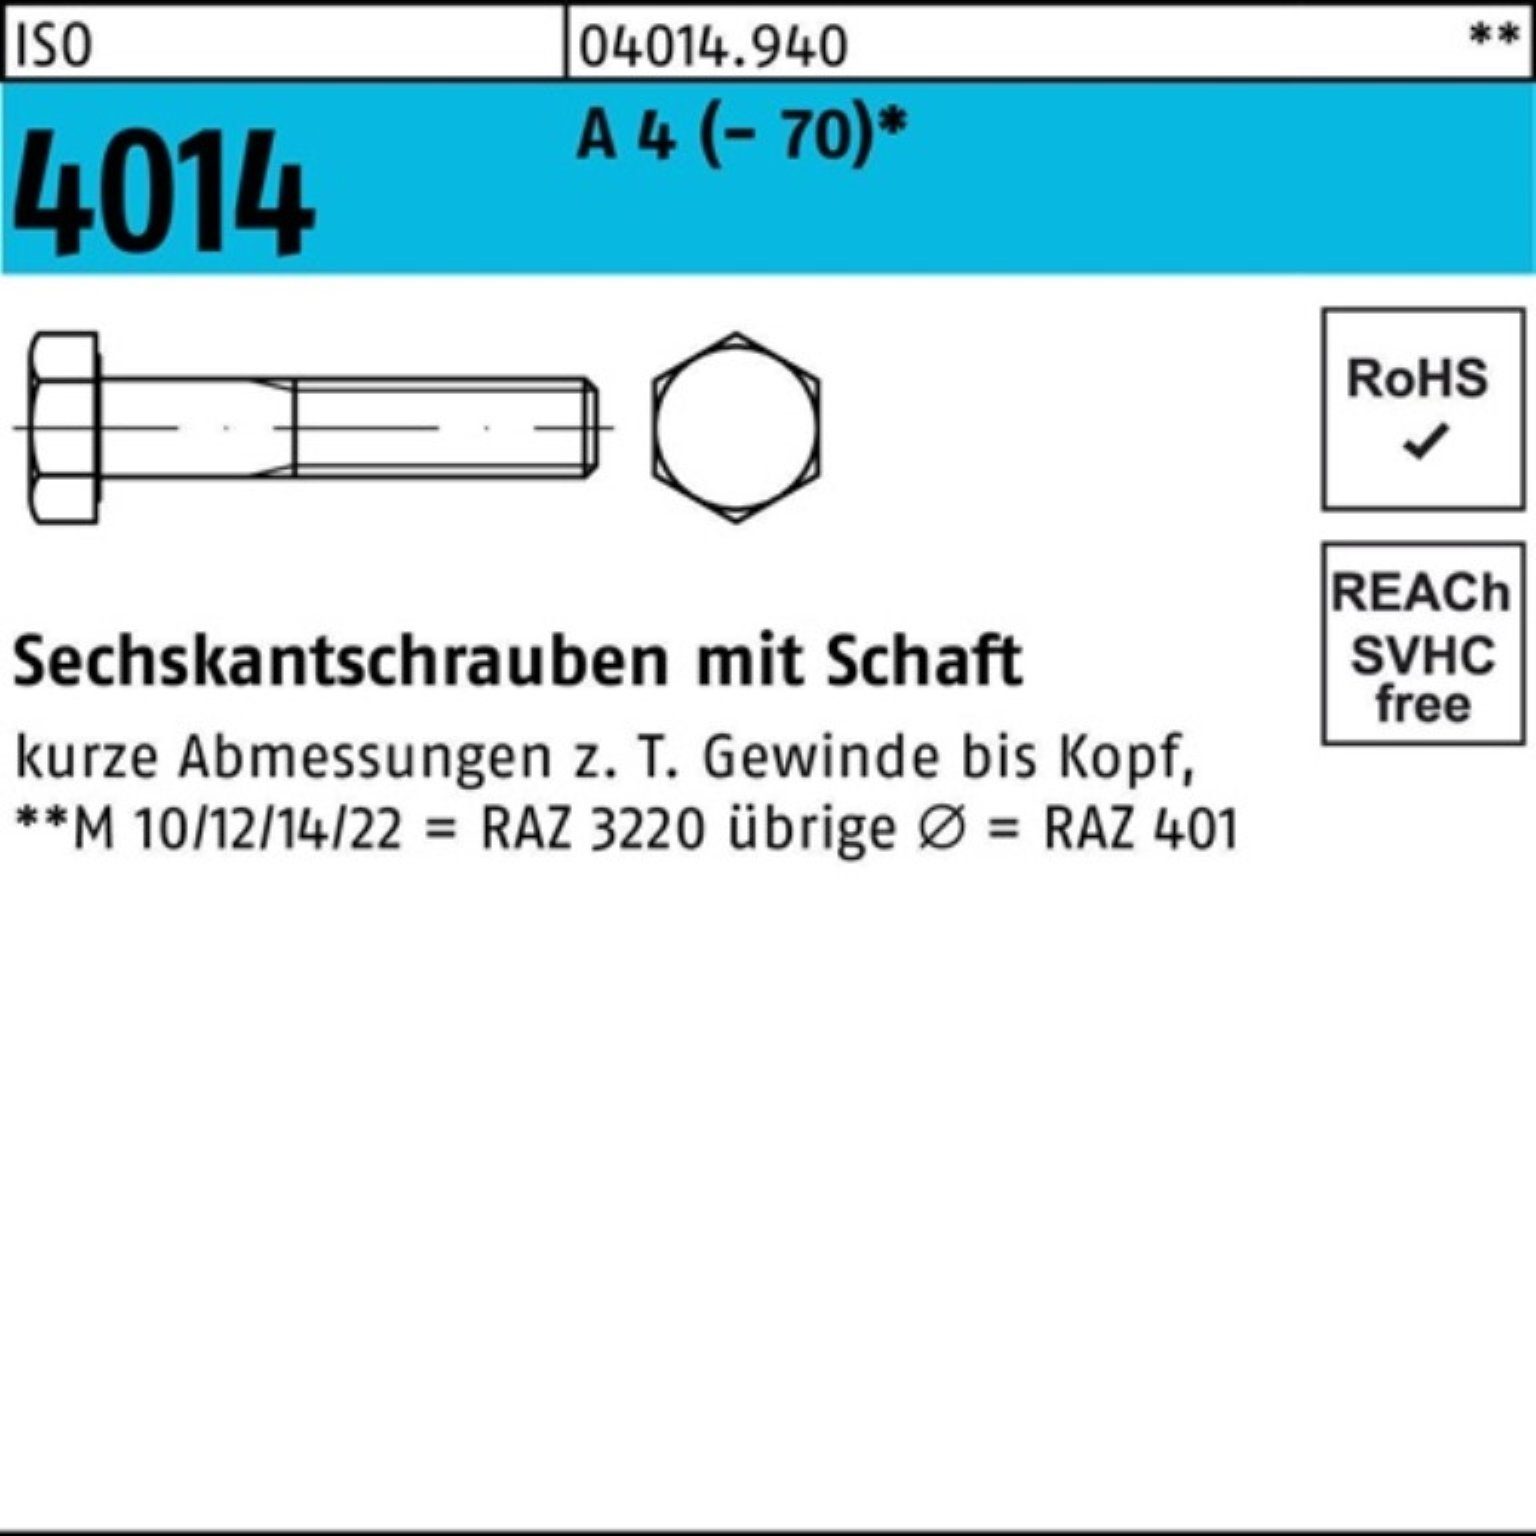 Bufab Sechskantschraube 100er Pack Sechskantschraube ISO 4014 Schaft M16x 90 A 4 (70) 25 St